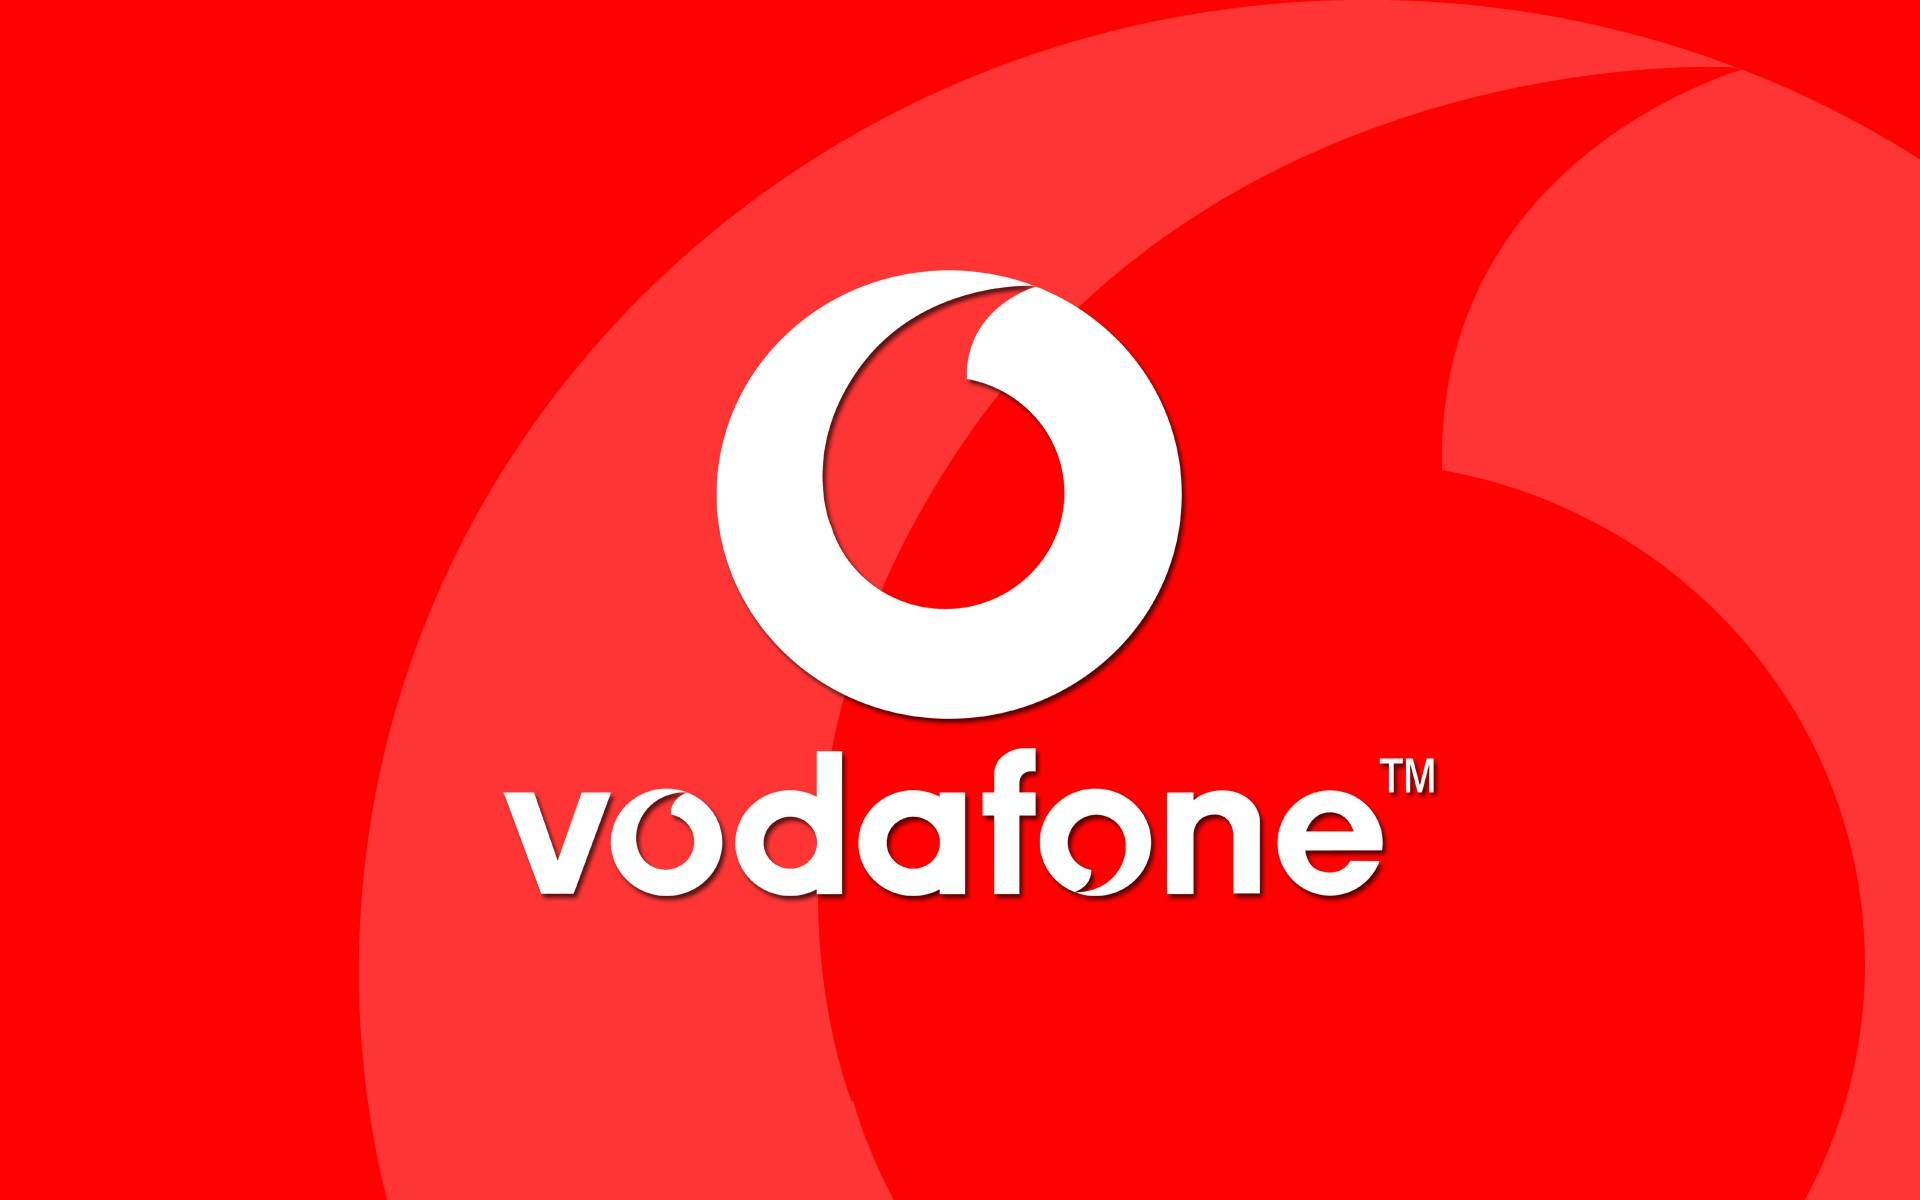 europæiske Vodafone